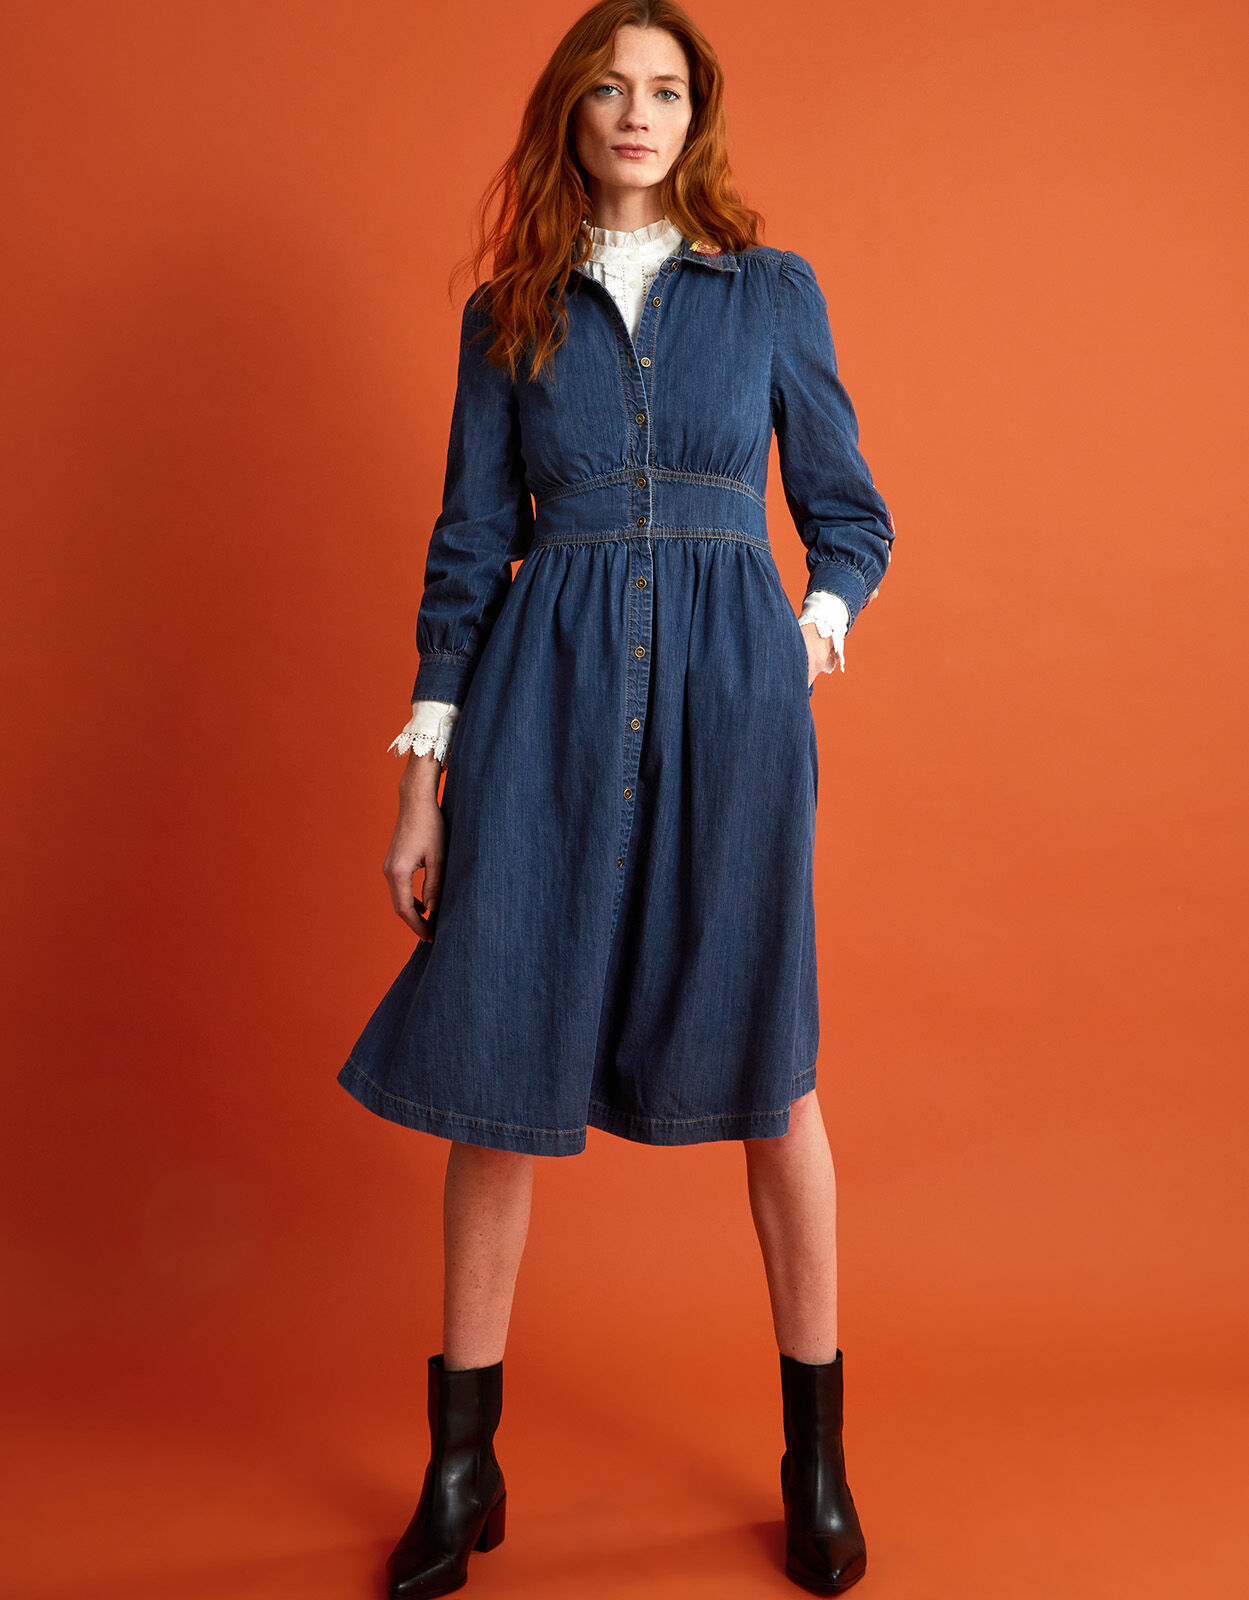 Forever 21 Women's Strapless Denim Midi Dress in Medium Denim Small |  Vancouver Mall